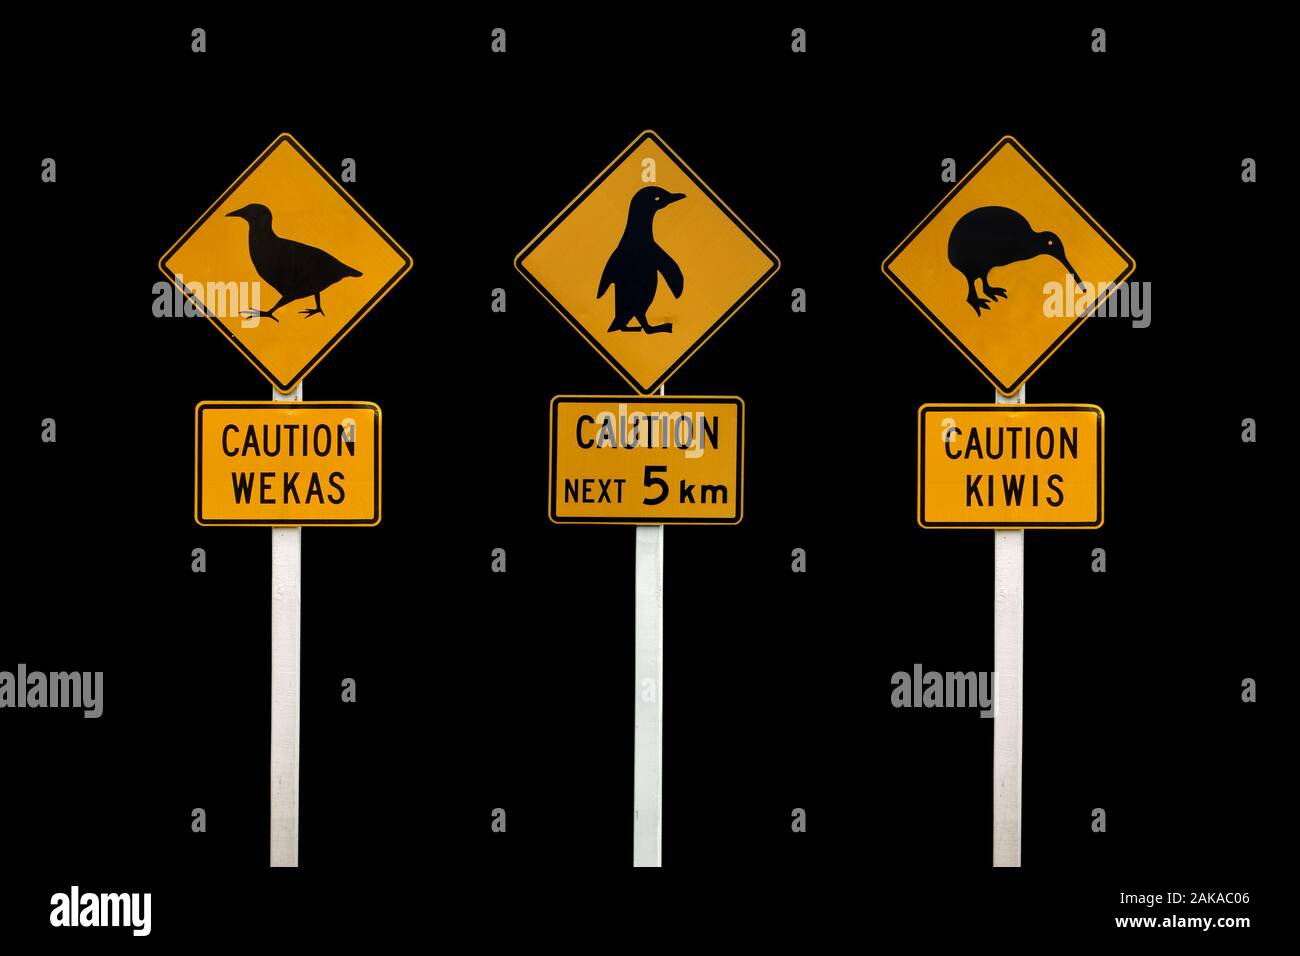 Nouvelle-zélande la signalisation routière sur fond noir. Attention kiwis, attention, attention pingouins wekas Banque D'Images